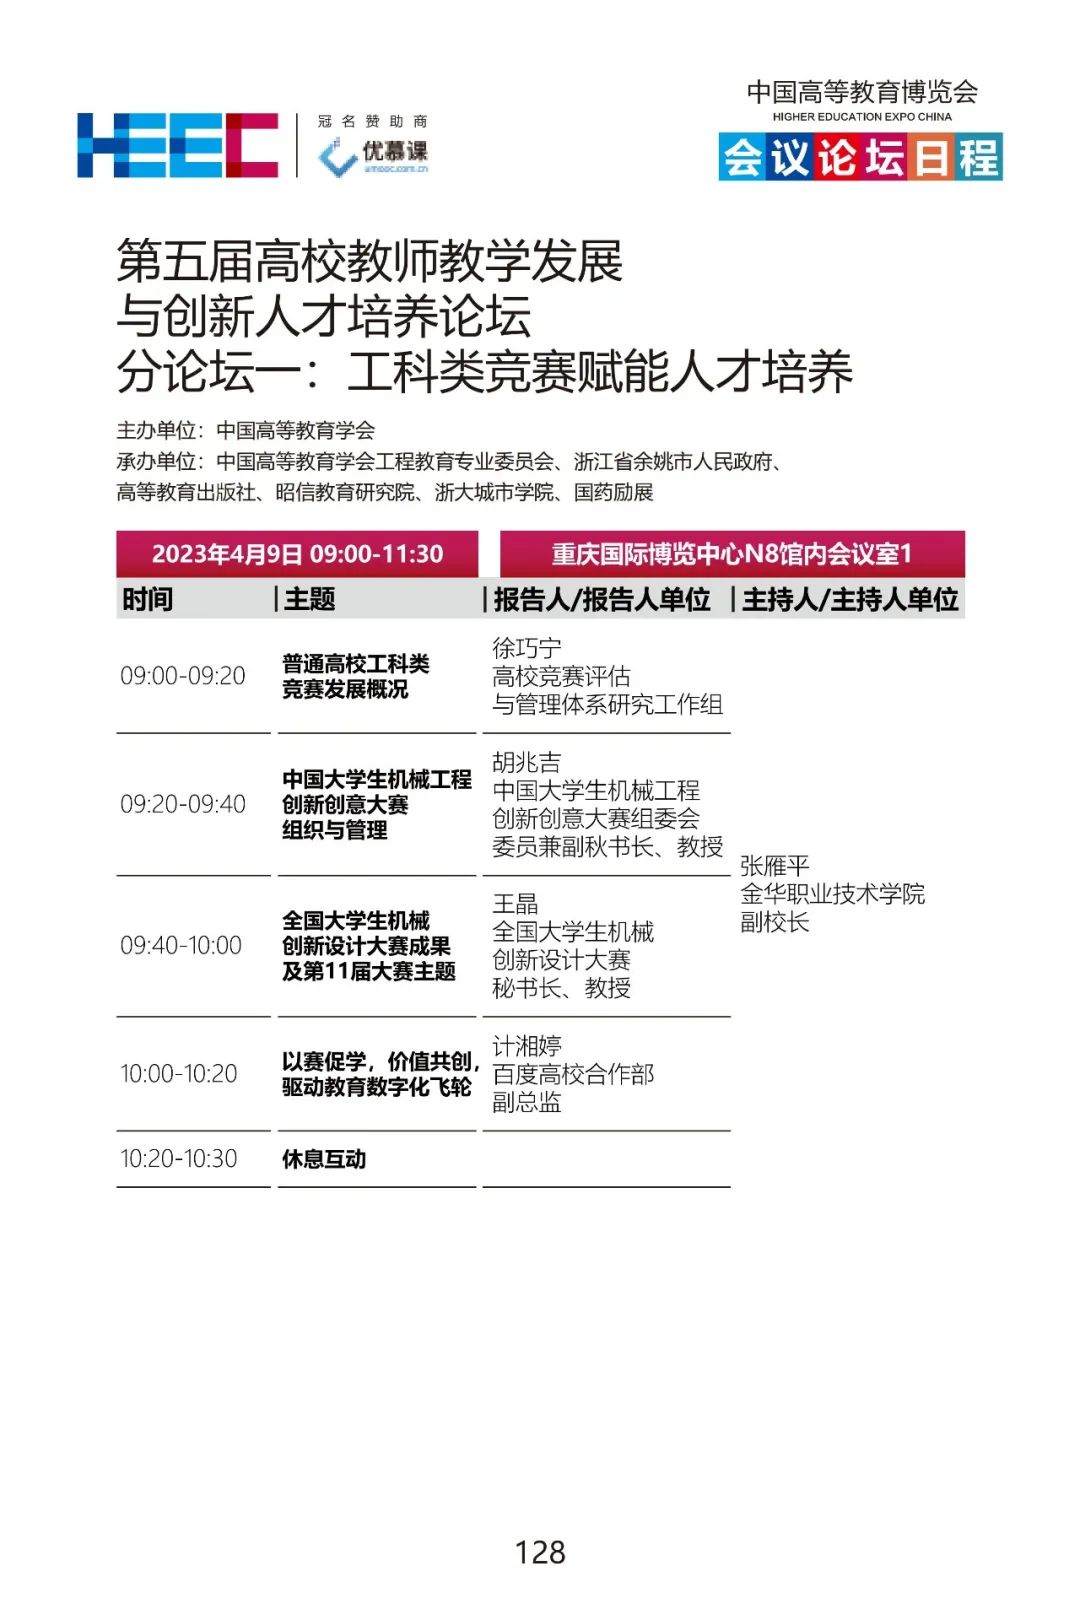 第58·59届中国高等教育博览会活动日程